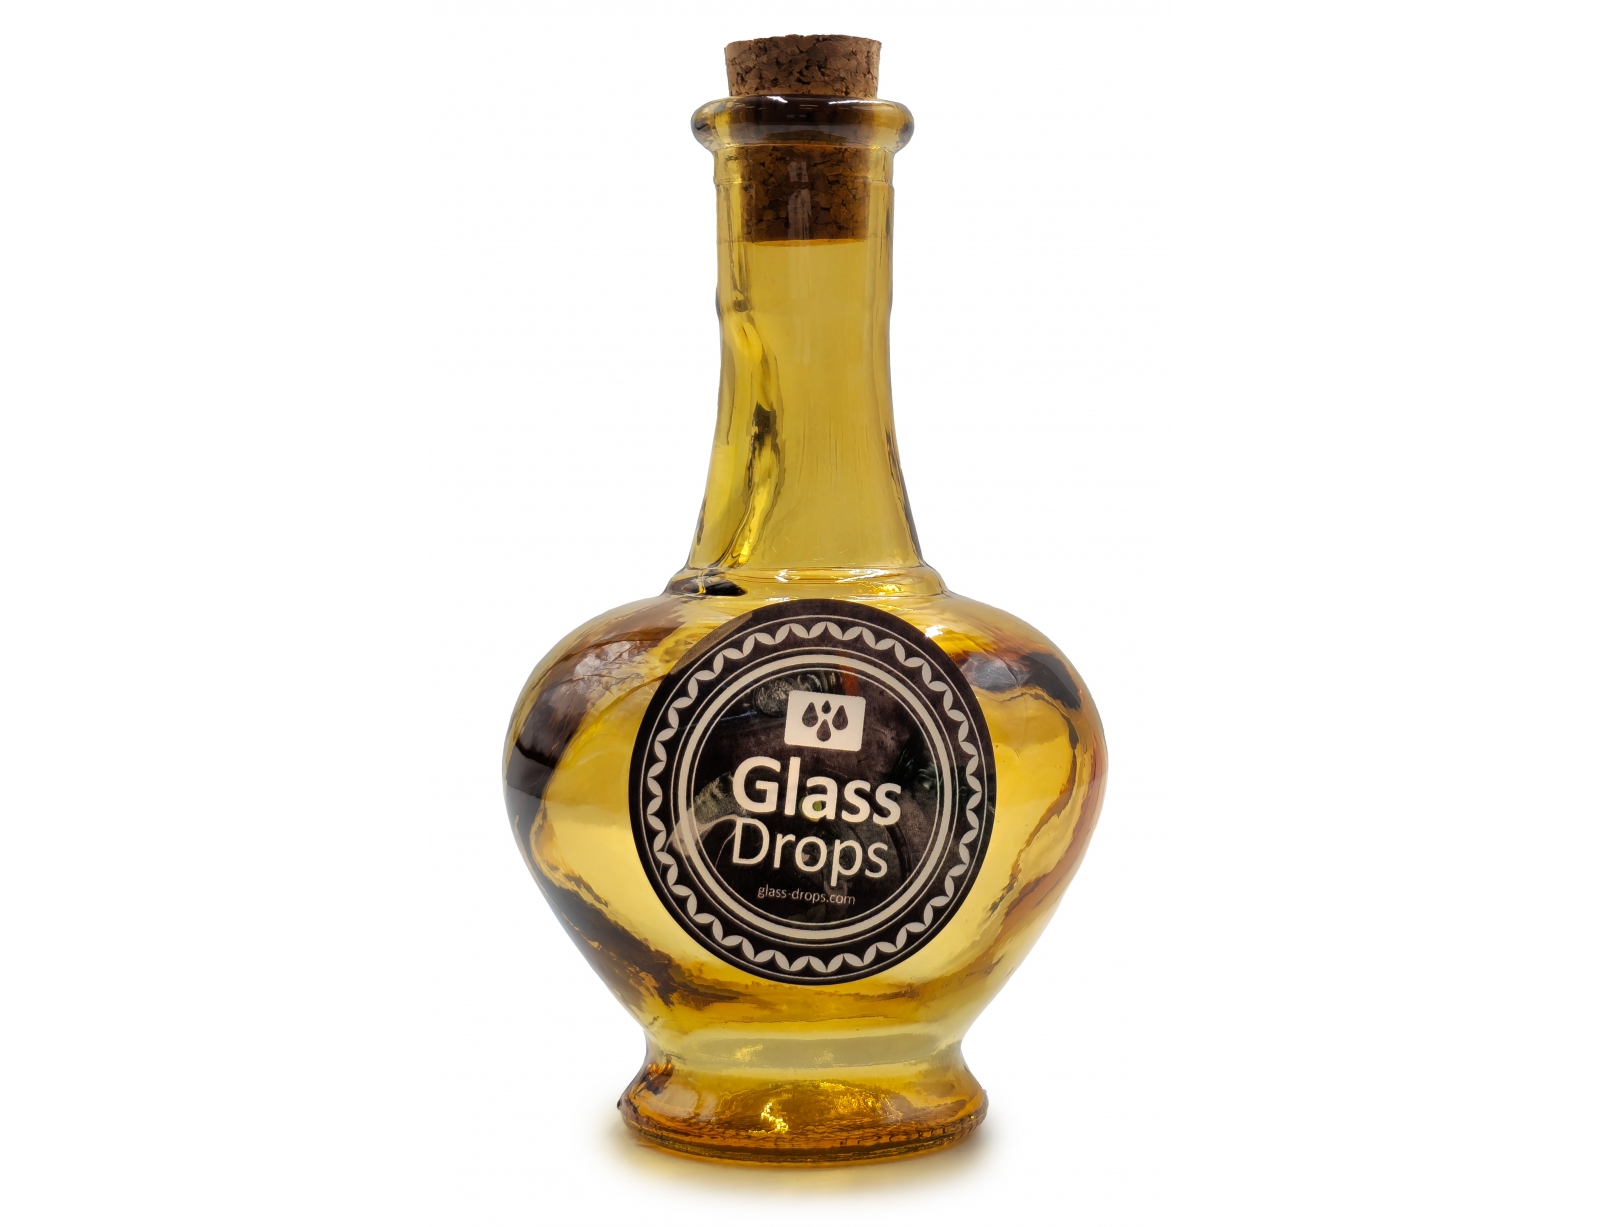 Εικόνα Διακοσμητικό Μπουκάλι με πώμα Glass Drops Navarra (5622DB411) Aπό 100% ανακυκλωμένο γυαλί, Xωρητικότητας 250ml, Διαστάσεων Ø 9 x Υ 15 cm, Yellow Gold